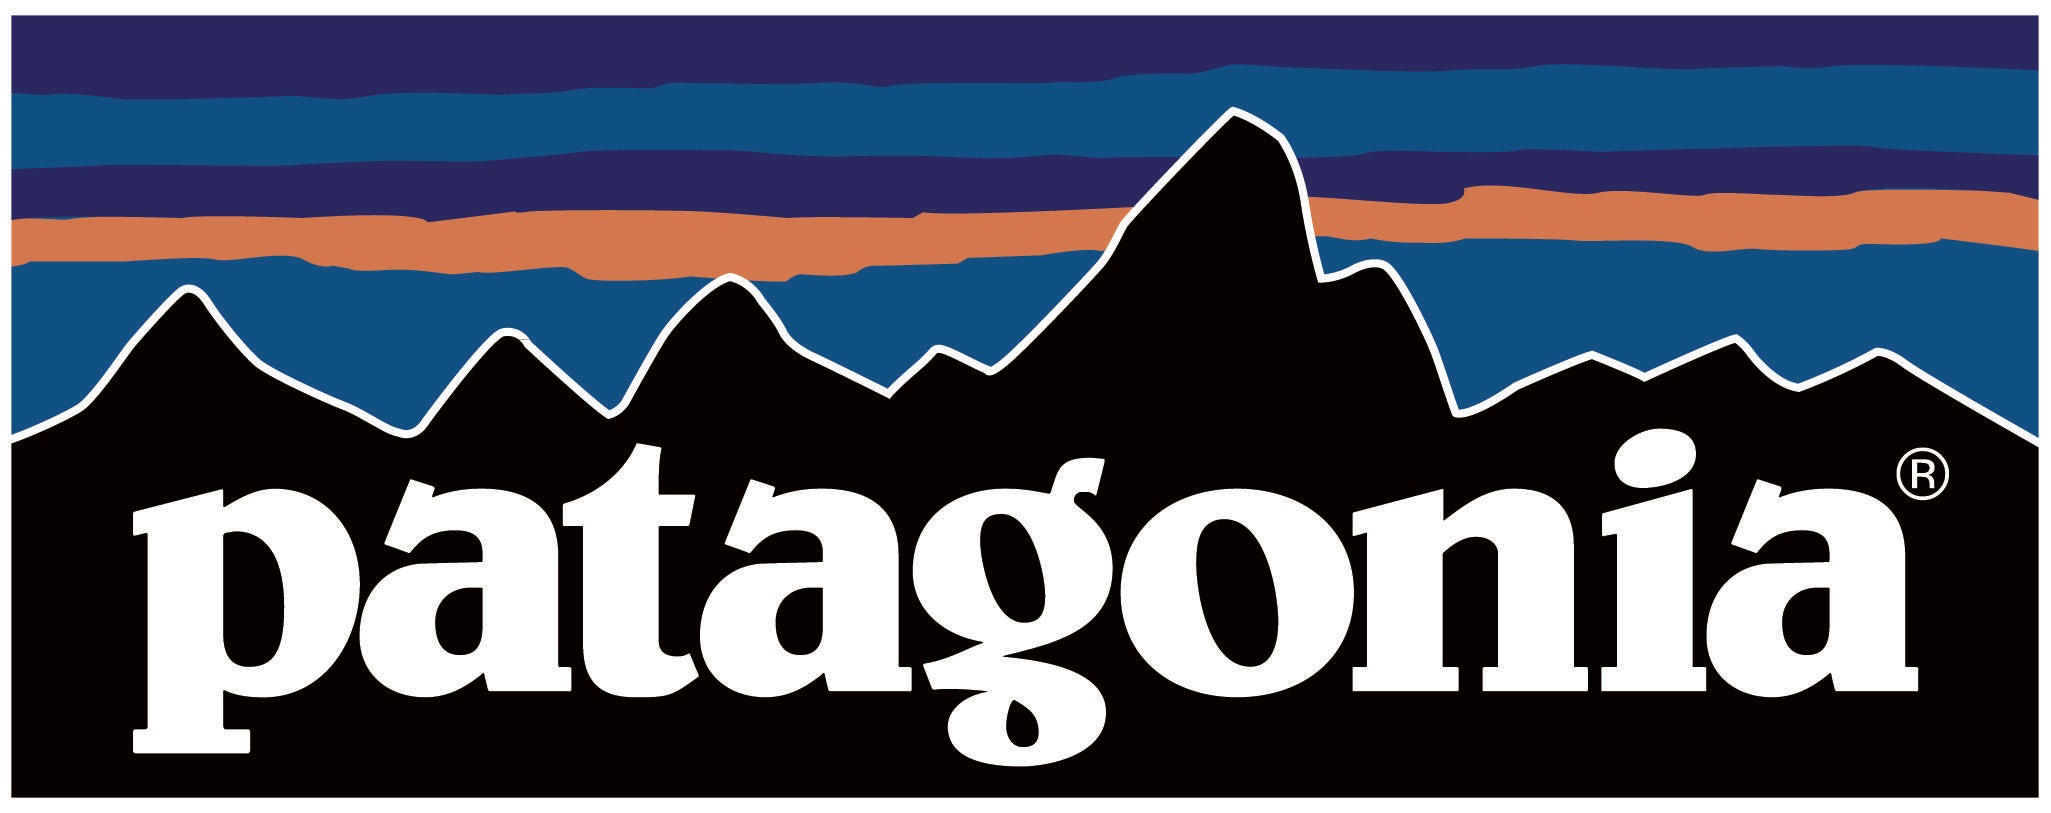 Patagonia Logo History | vlr.eng.br